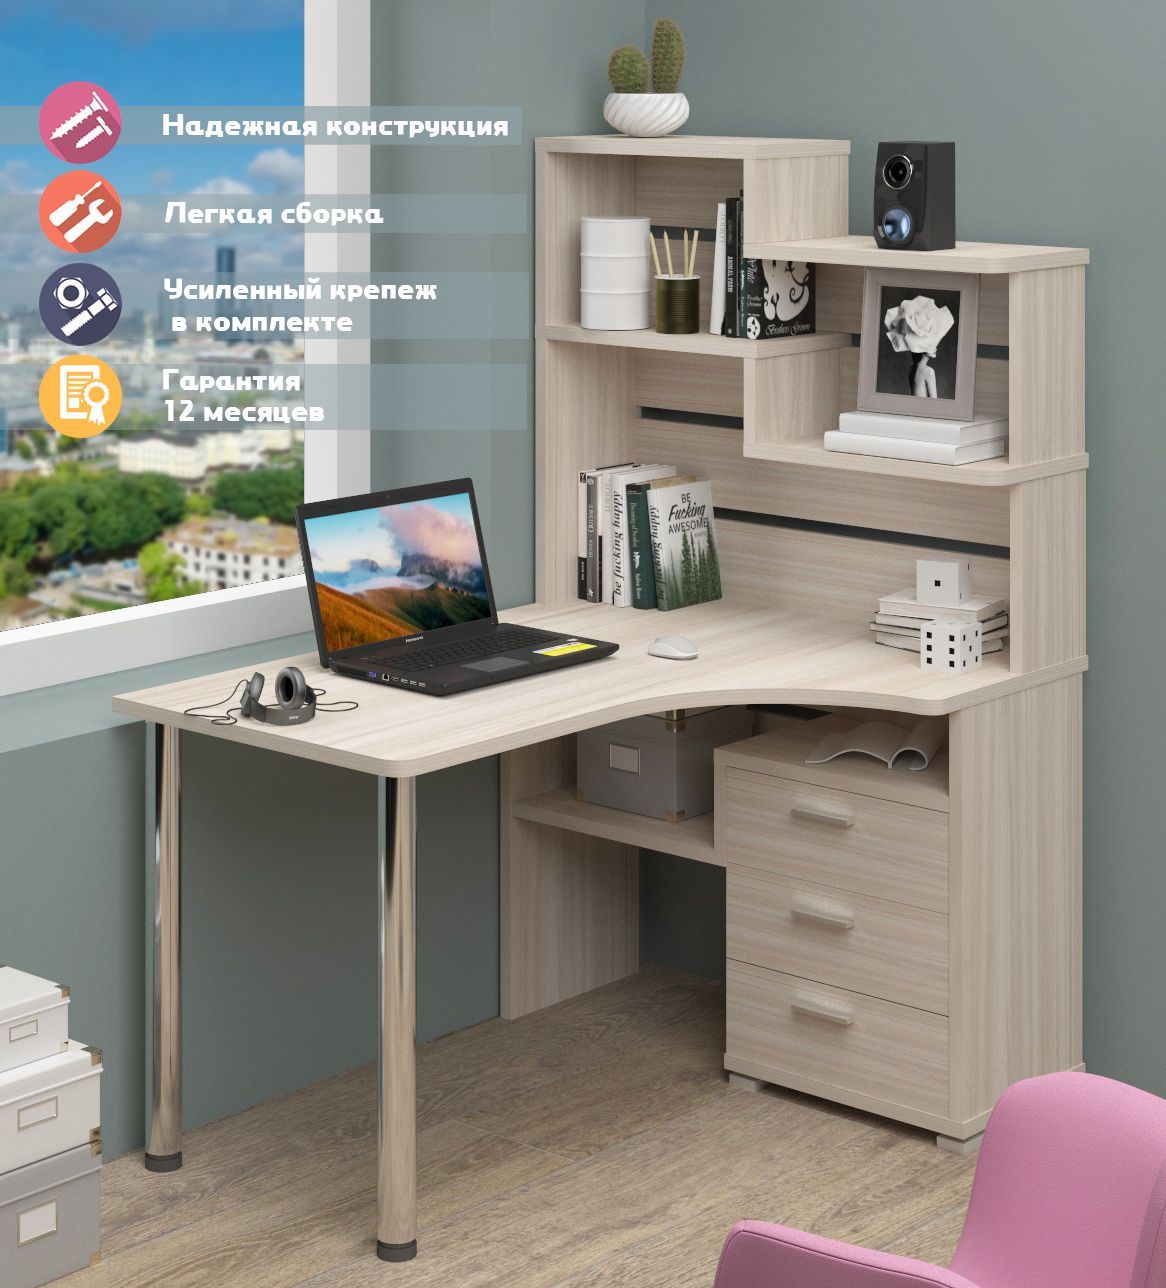 Мебель «Мэрдэс»: компьютерные столы, полки и другая мебель от мебельной фабрики, отзывы покупателей - официальный сайт